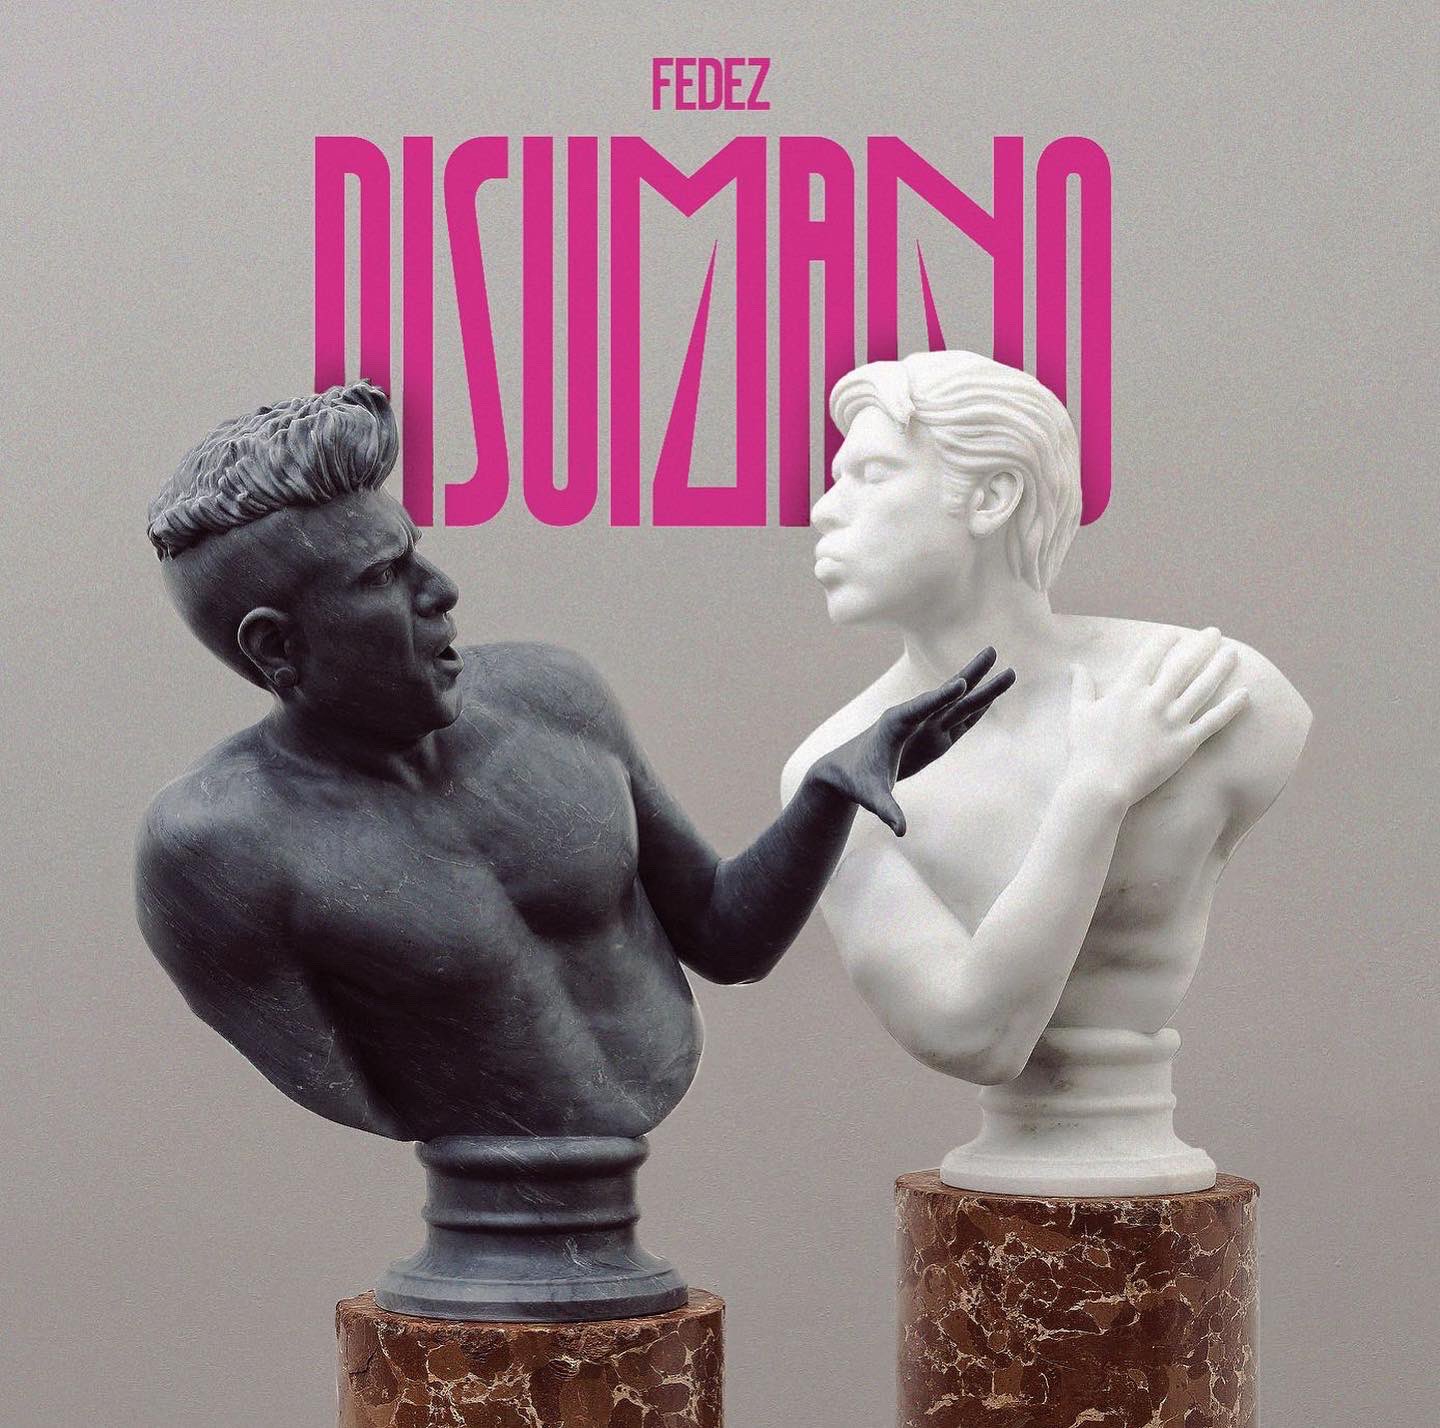 Fedez ha annunciato il suo nuovo album “Disumano”